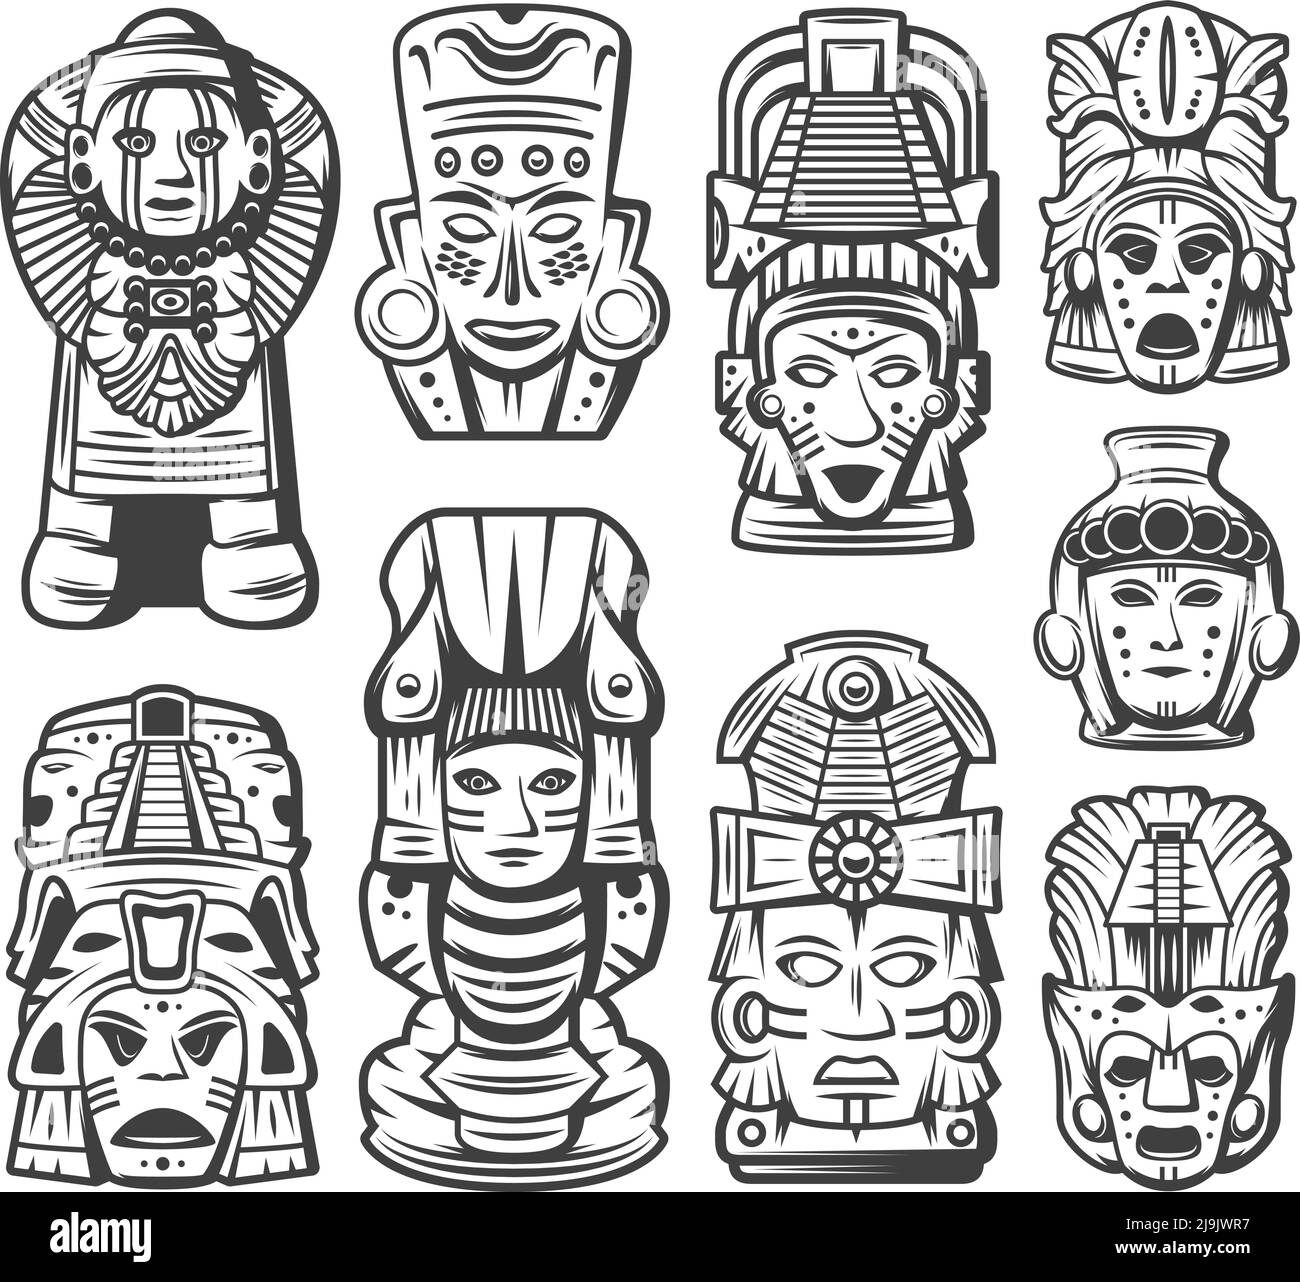 Collection d'objets de civilisation maya monochrome vintage avec masques de cérémonie tribaux et aztec totems illustration vectorielle isolée Illustration de Vecteur